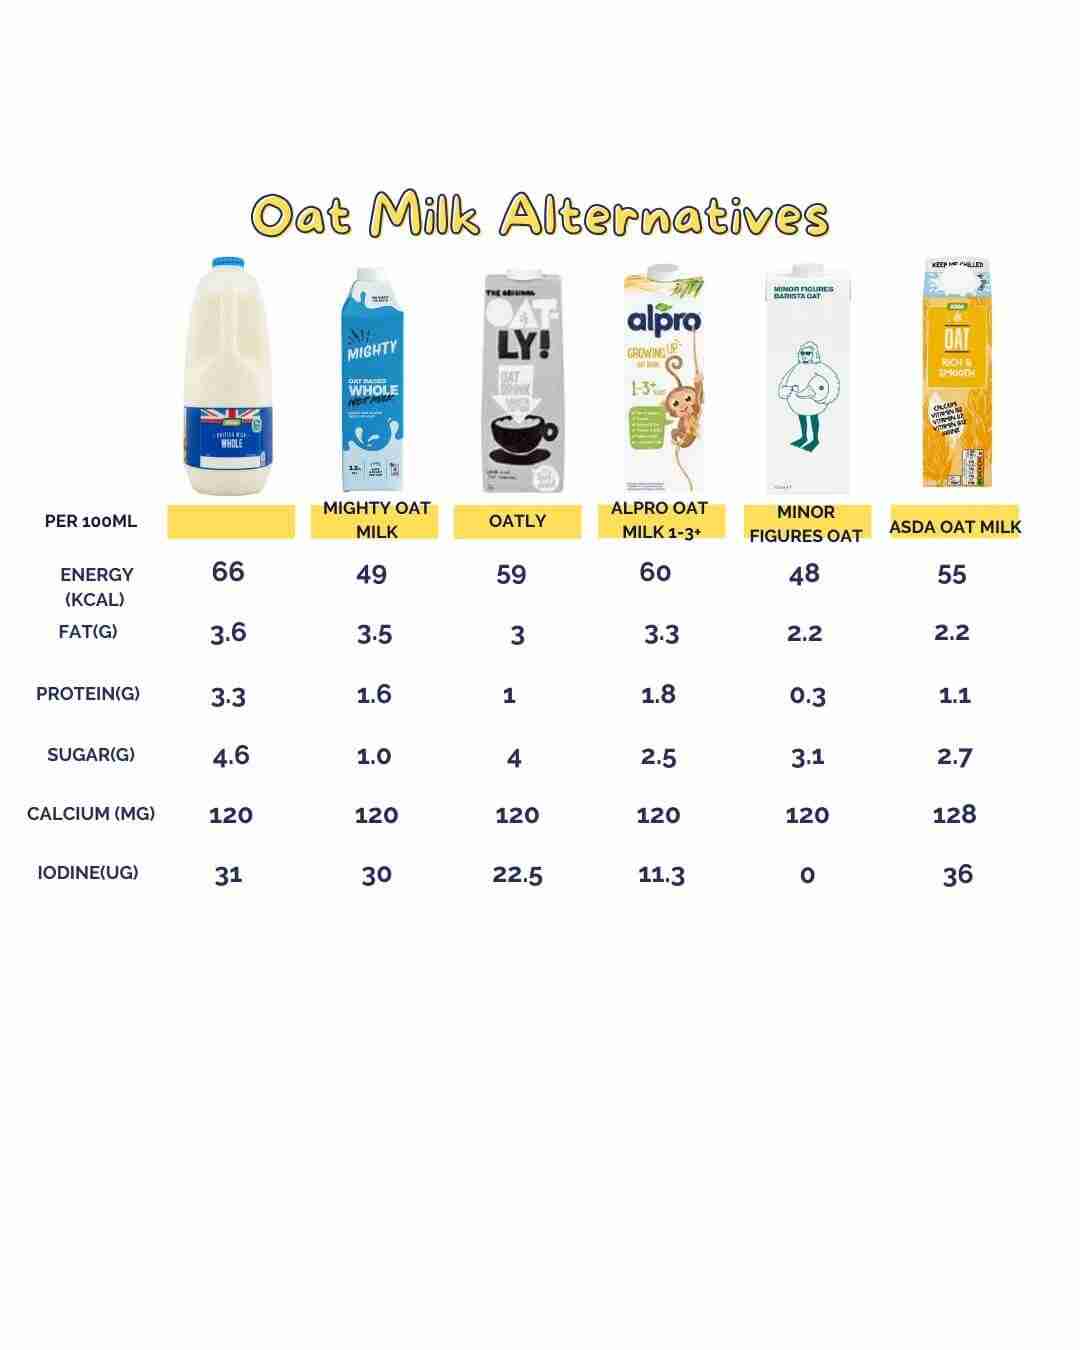 Oat milk alternatives